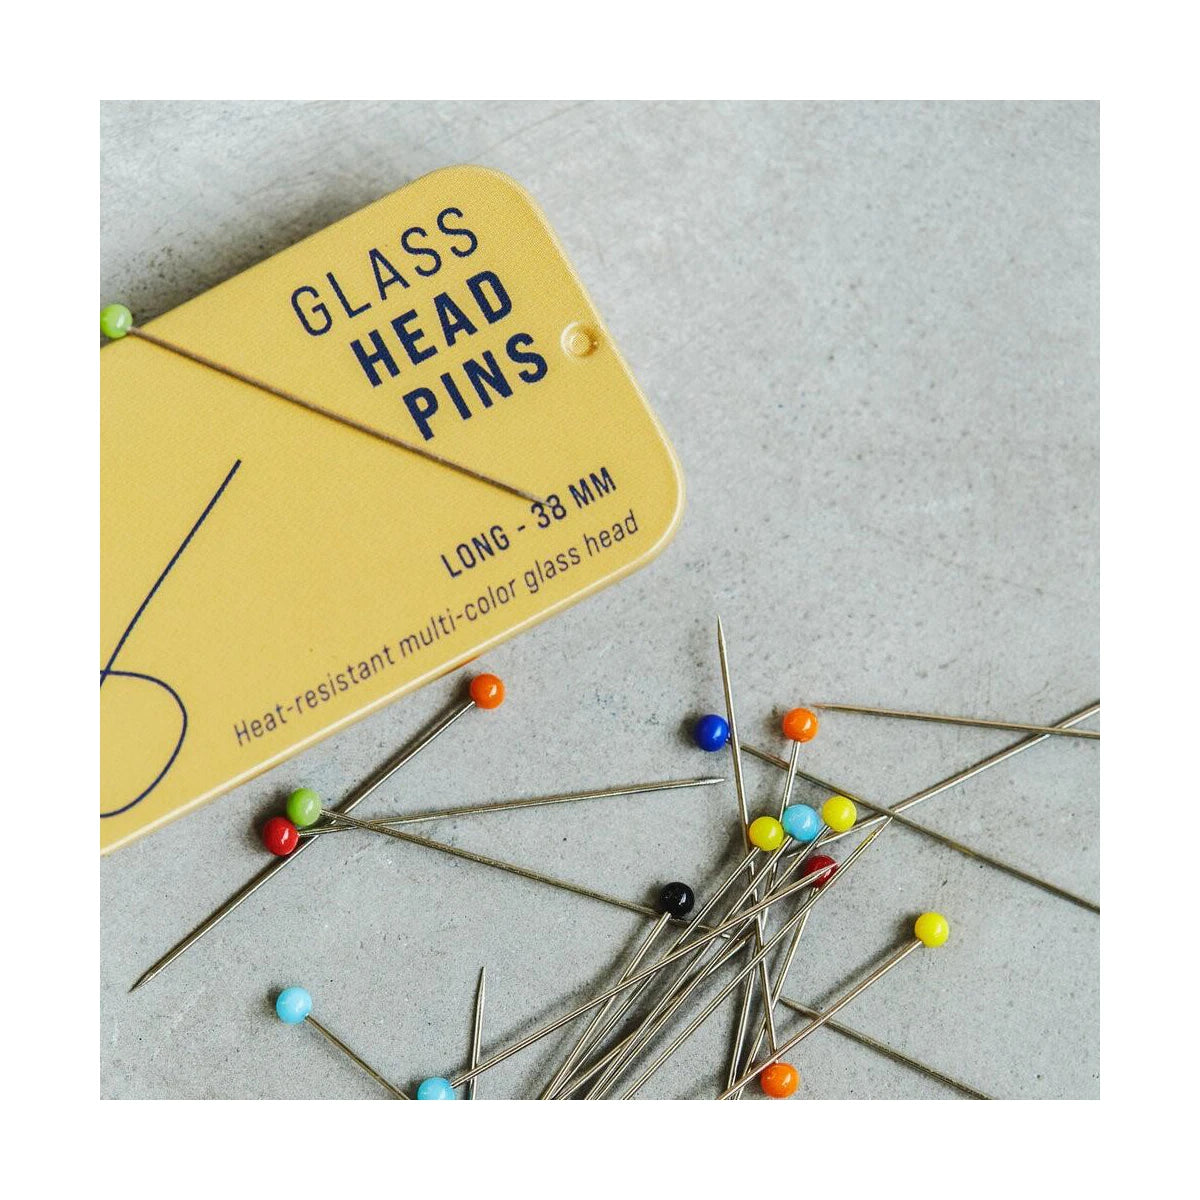 GLASS HEAD PINS 38 mm (100 pc)